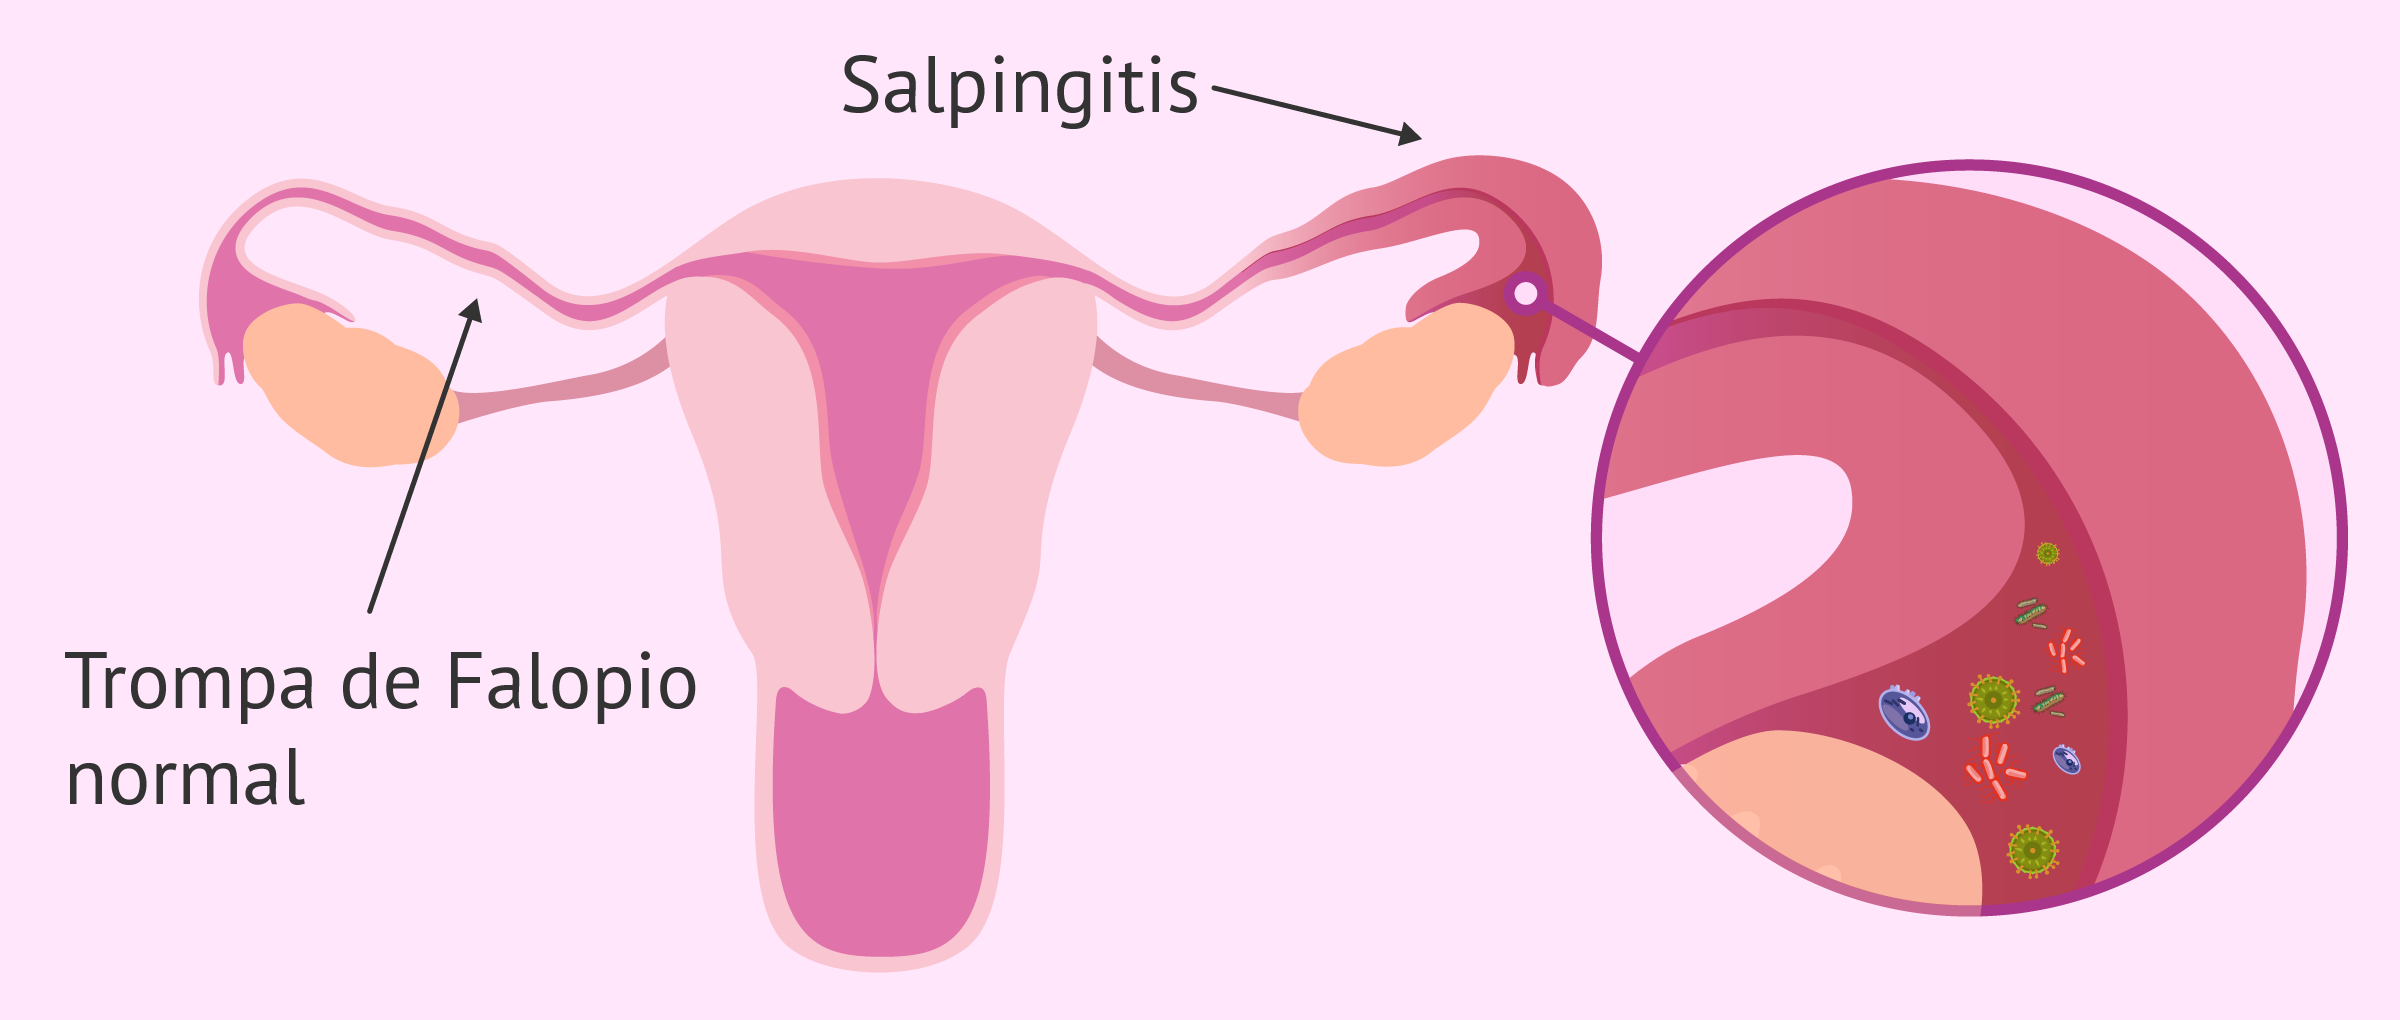 Salpingitis: definición, causas, síntomas y tratamiento